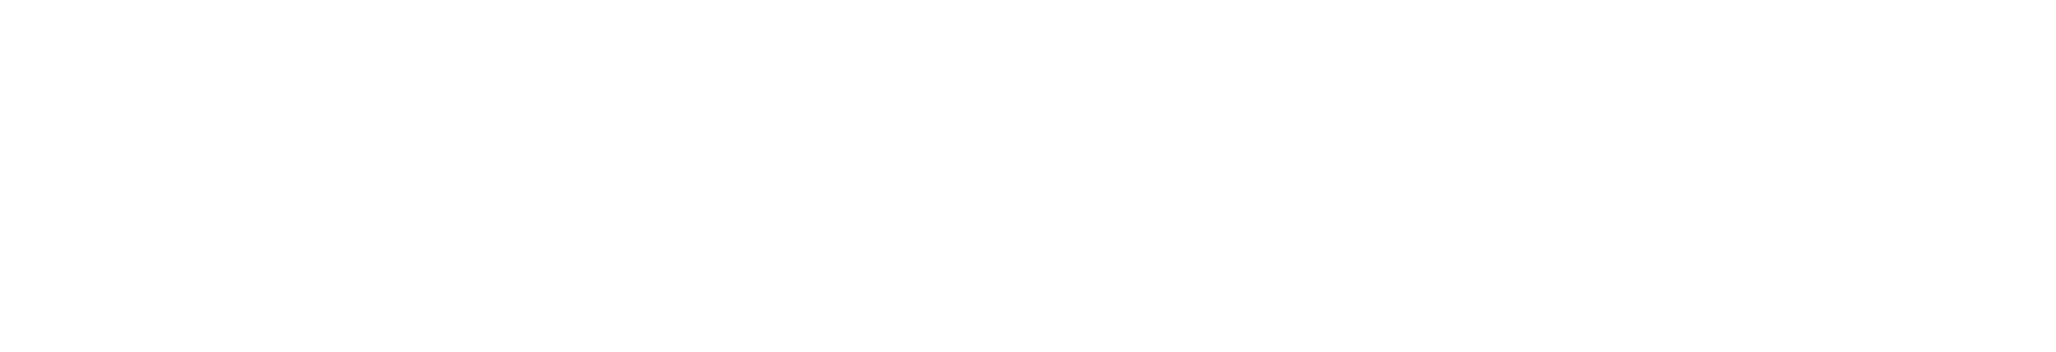 UHG marketplace logo